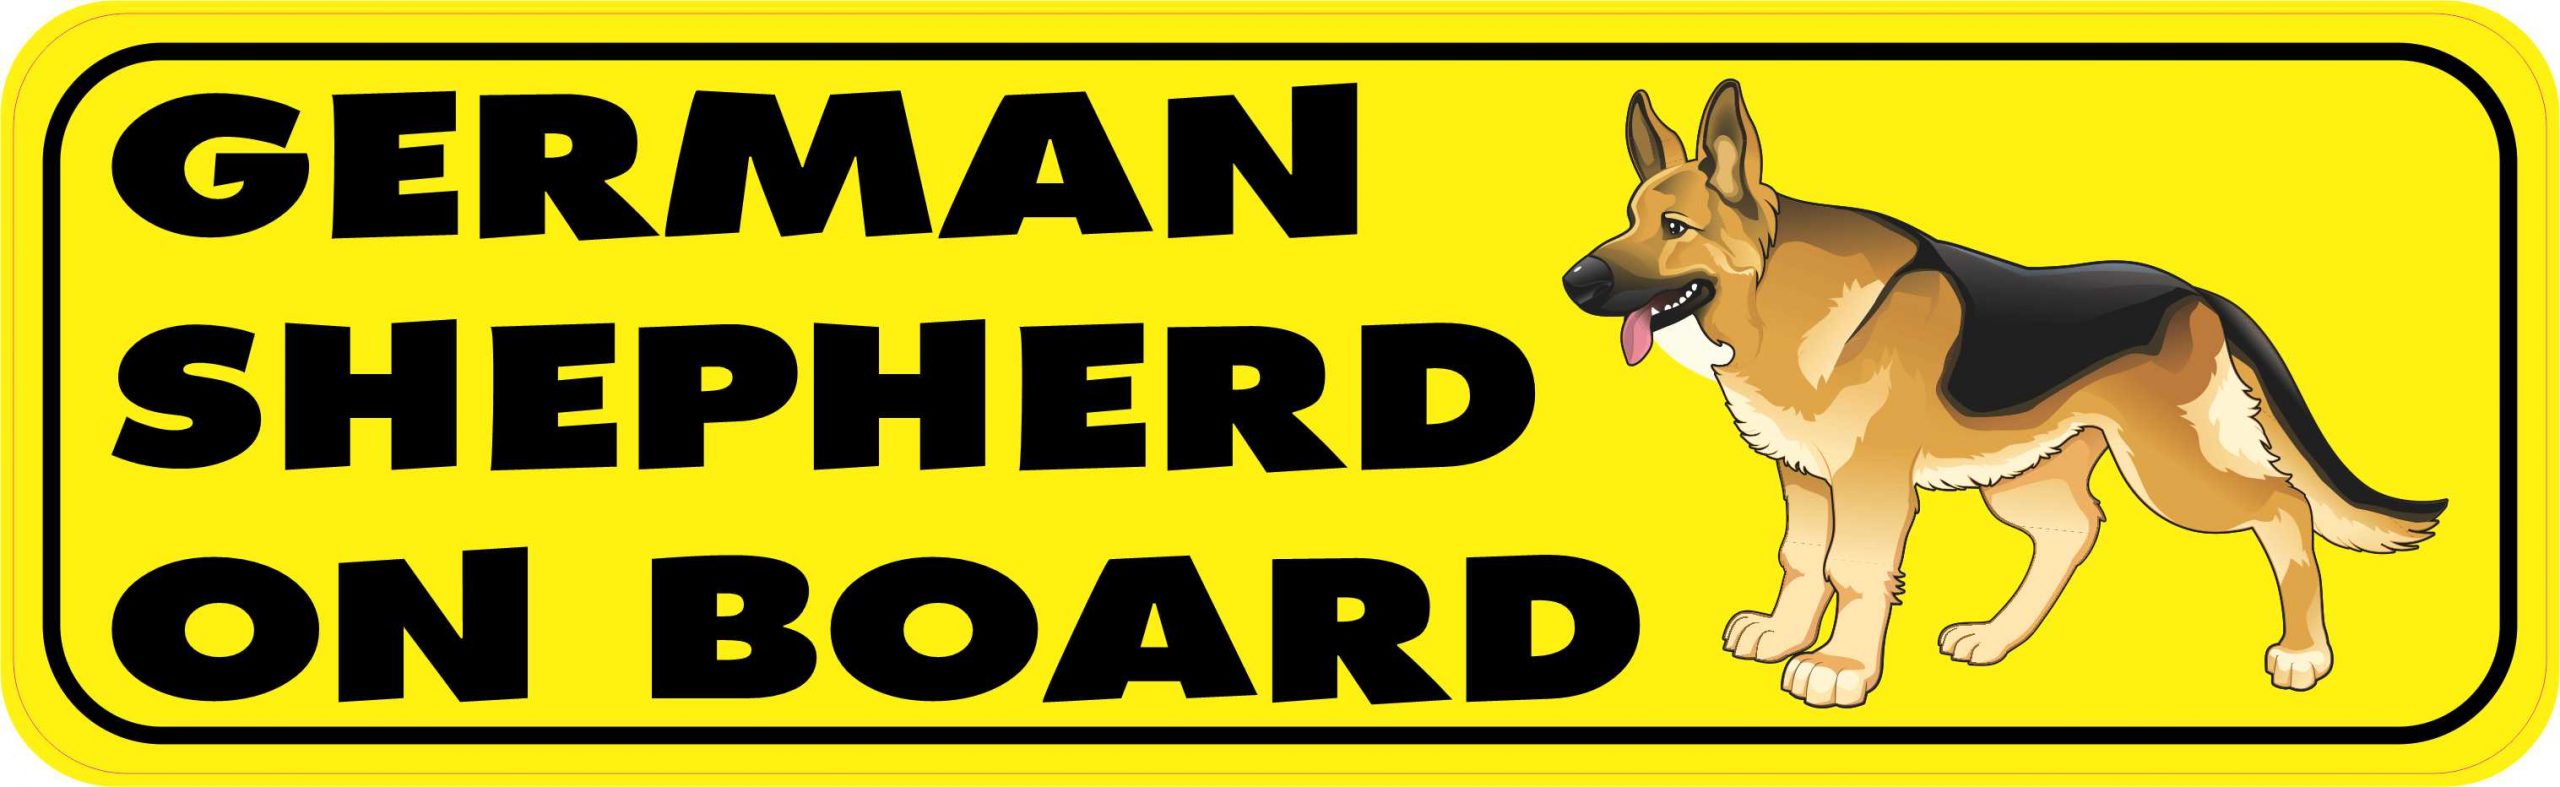 StickerTalk German Shepherd on Board Vinyl Sticker, 10 inches x 3 inches